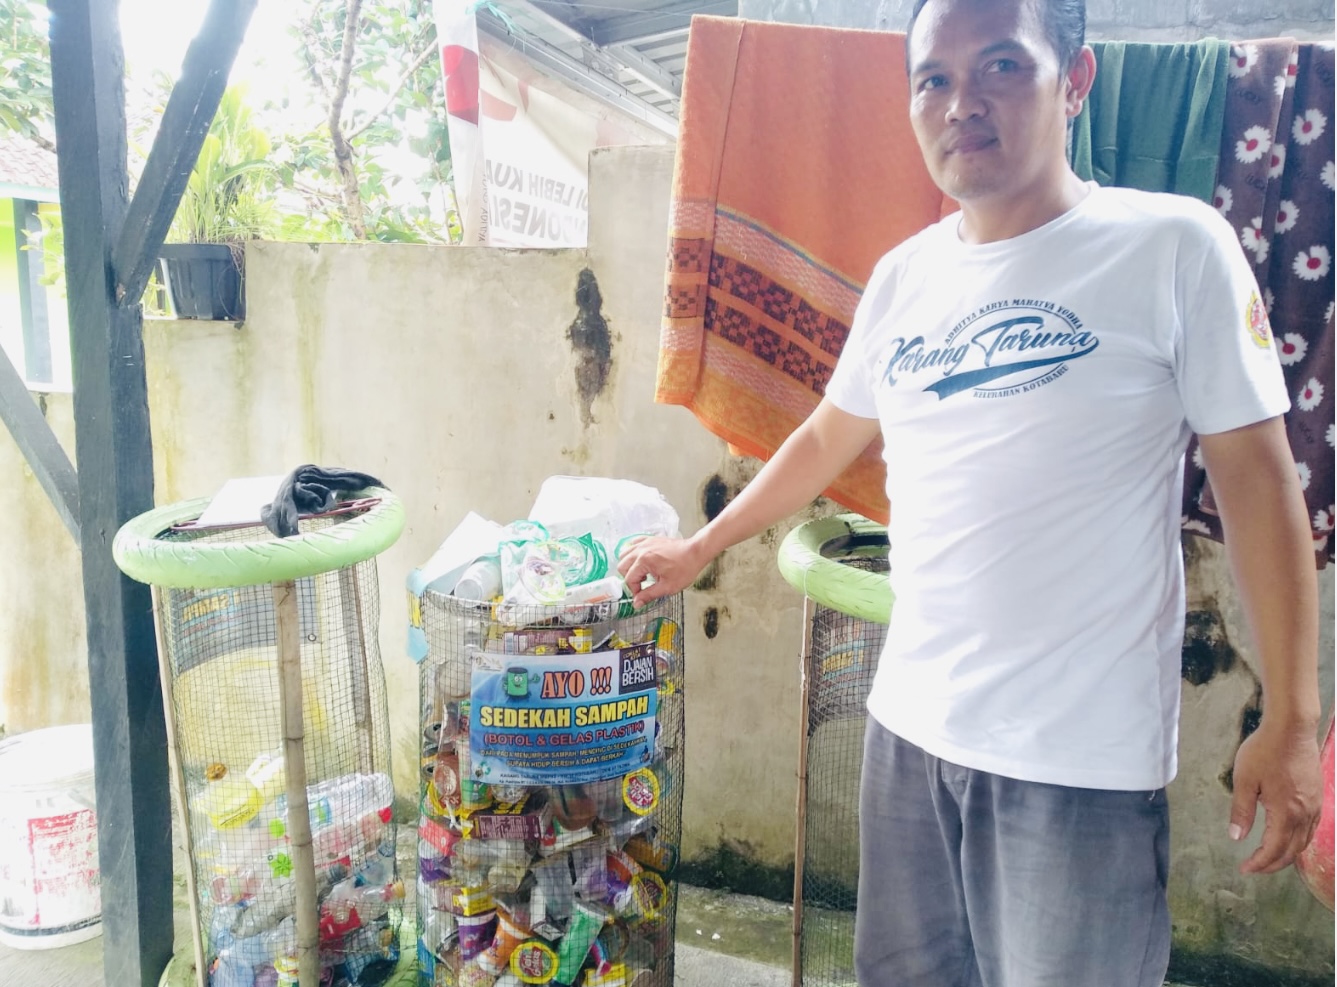 Warga Pasir Ipis Kotabaru Tasikmalaya Sedekah Sampah, Bank Sampah Sediakan Keranjang Per 50 Meter